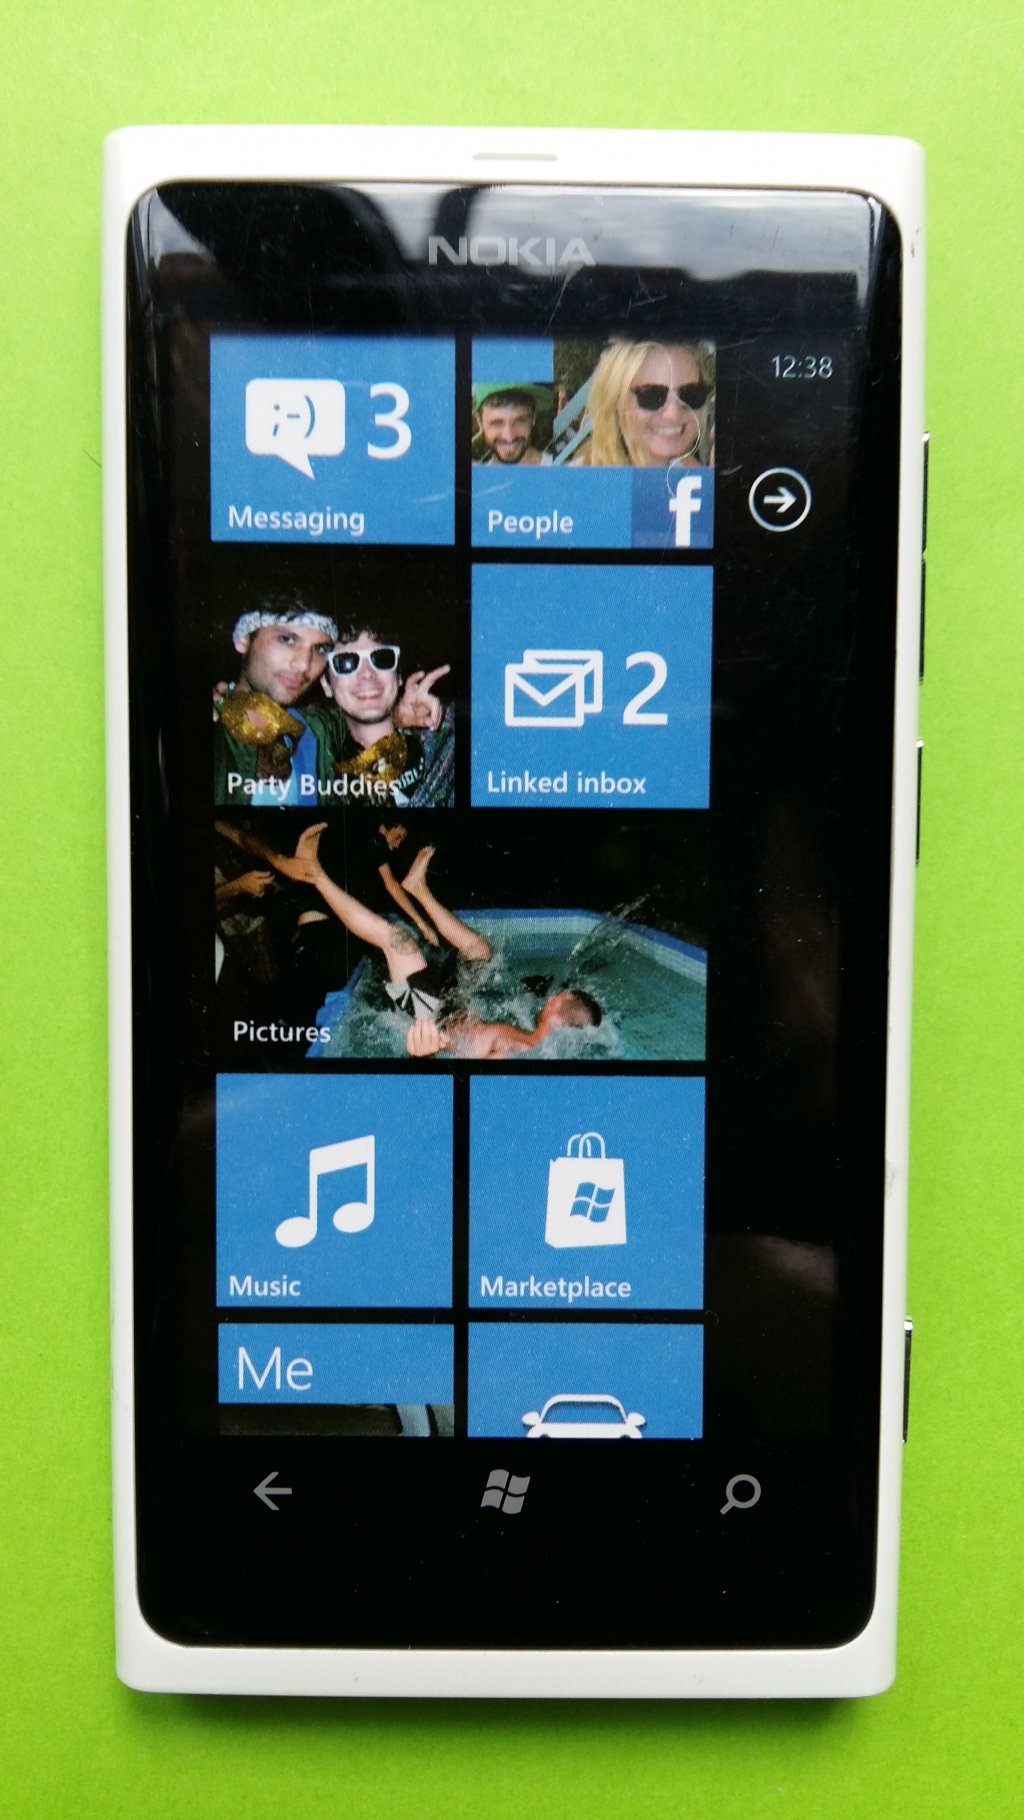 image-12107537-Nokia_800_Lumia_Atrappe-e4da3.w640.jpg